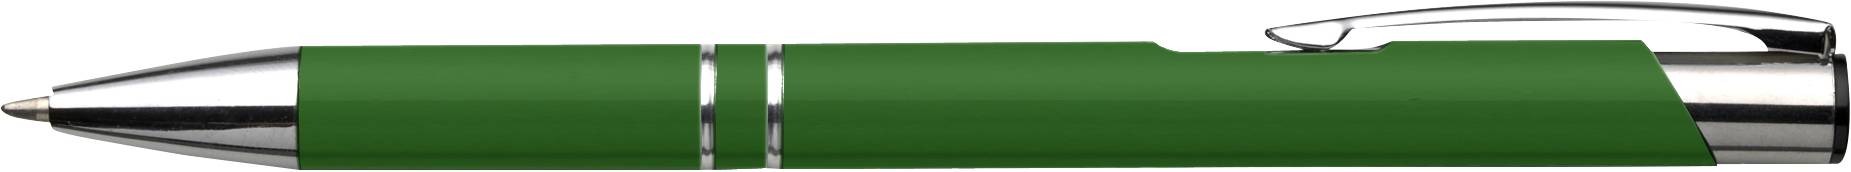 Gravírozott fém toll - zöld